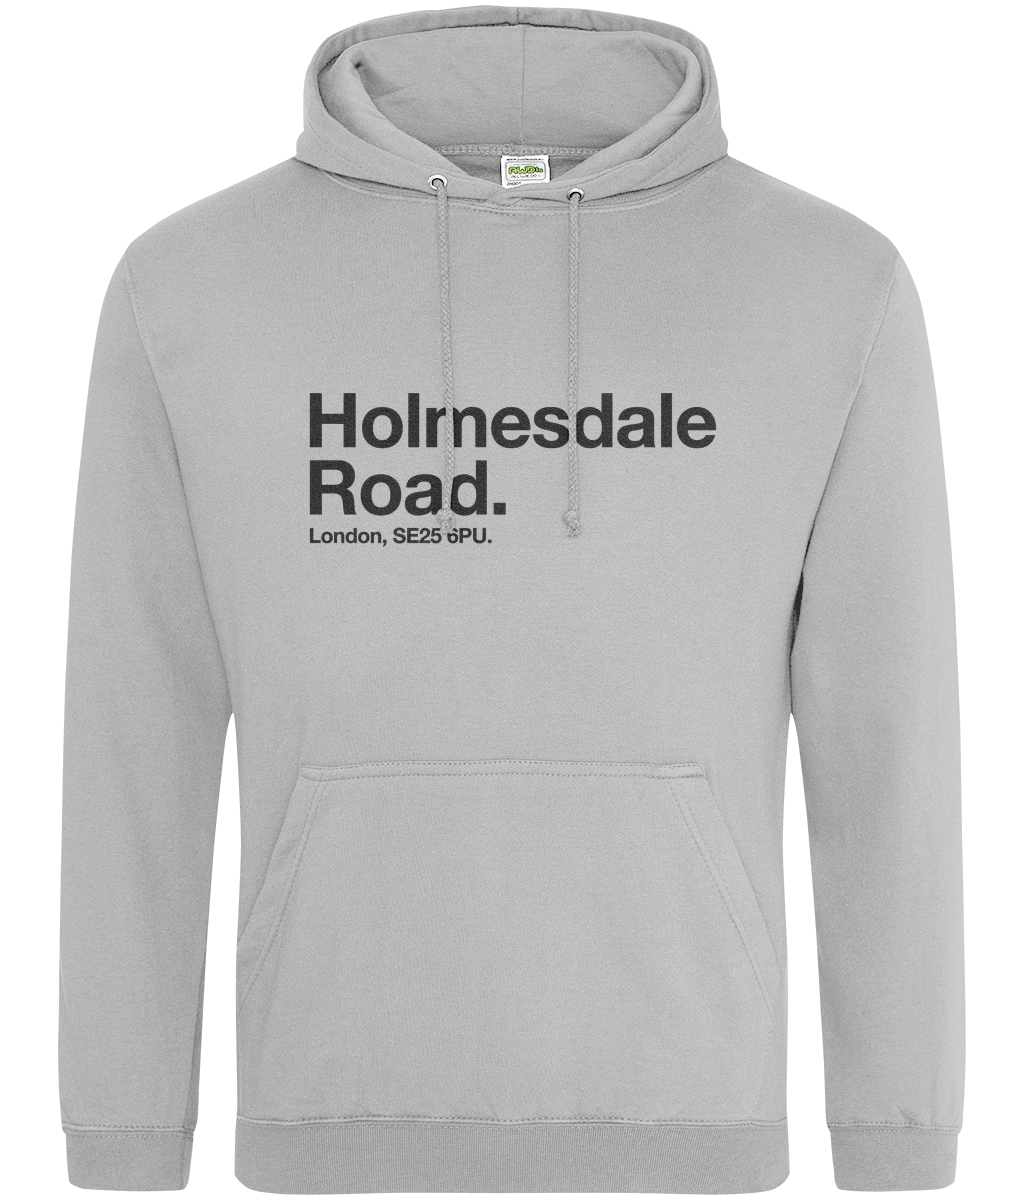 Holmesdale Road - Hoodie